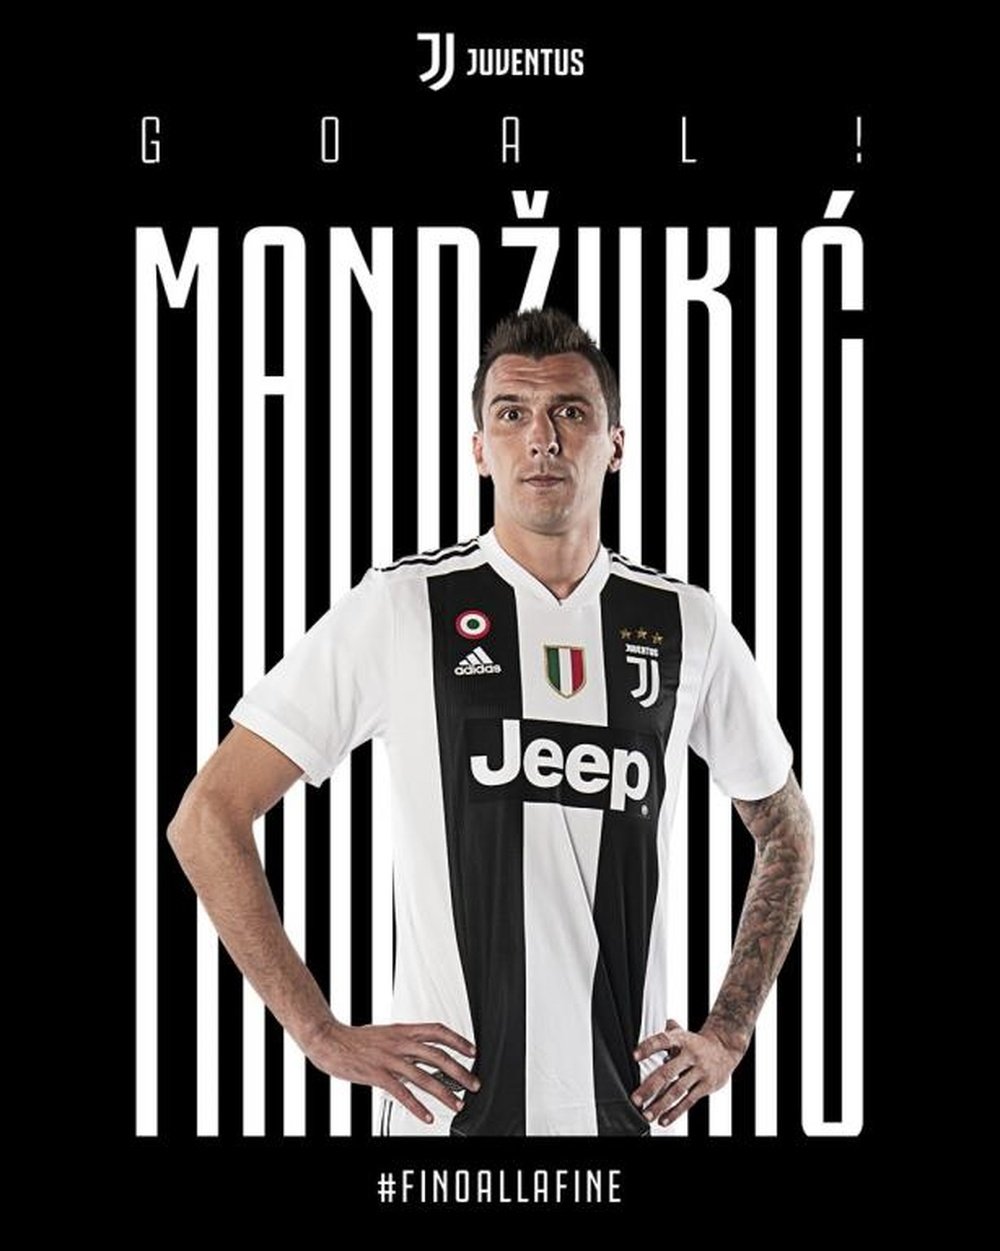 Mandzukic scores. Twitter/JuventusFC